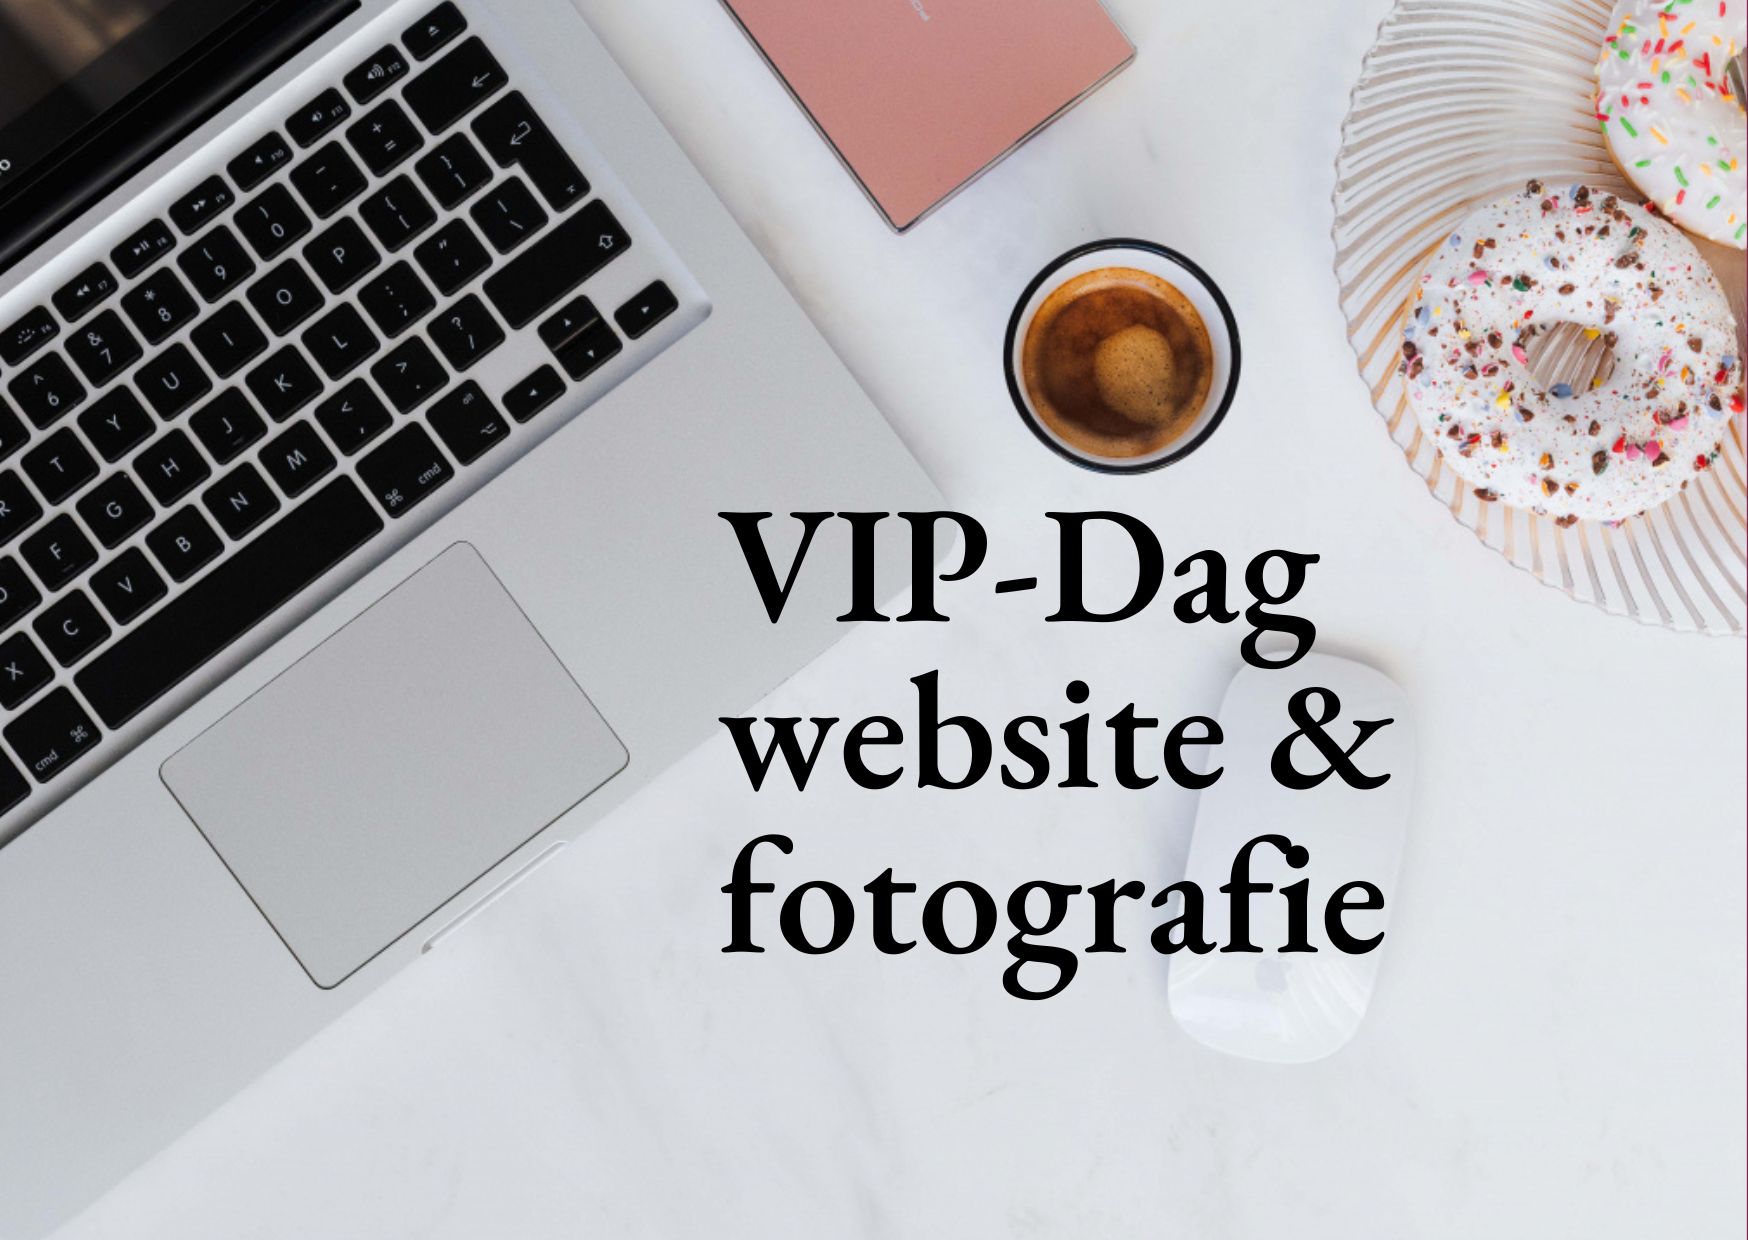 VIP-Dag Website & Fotografie